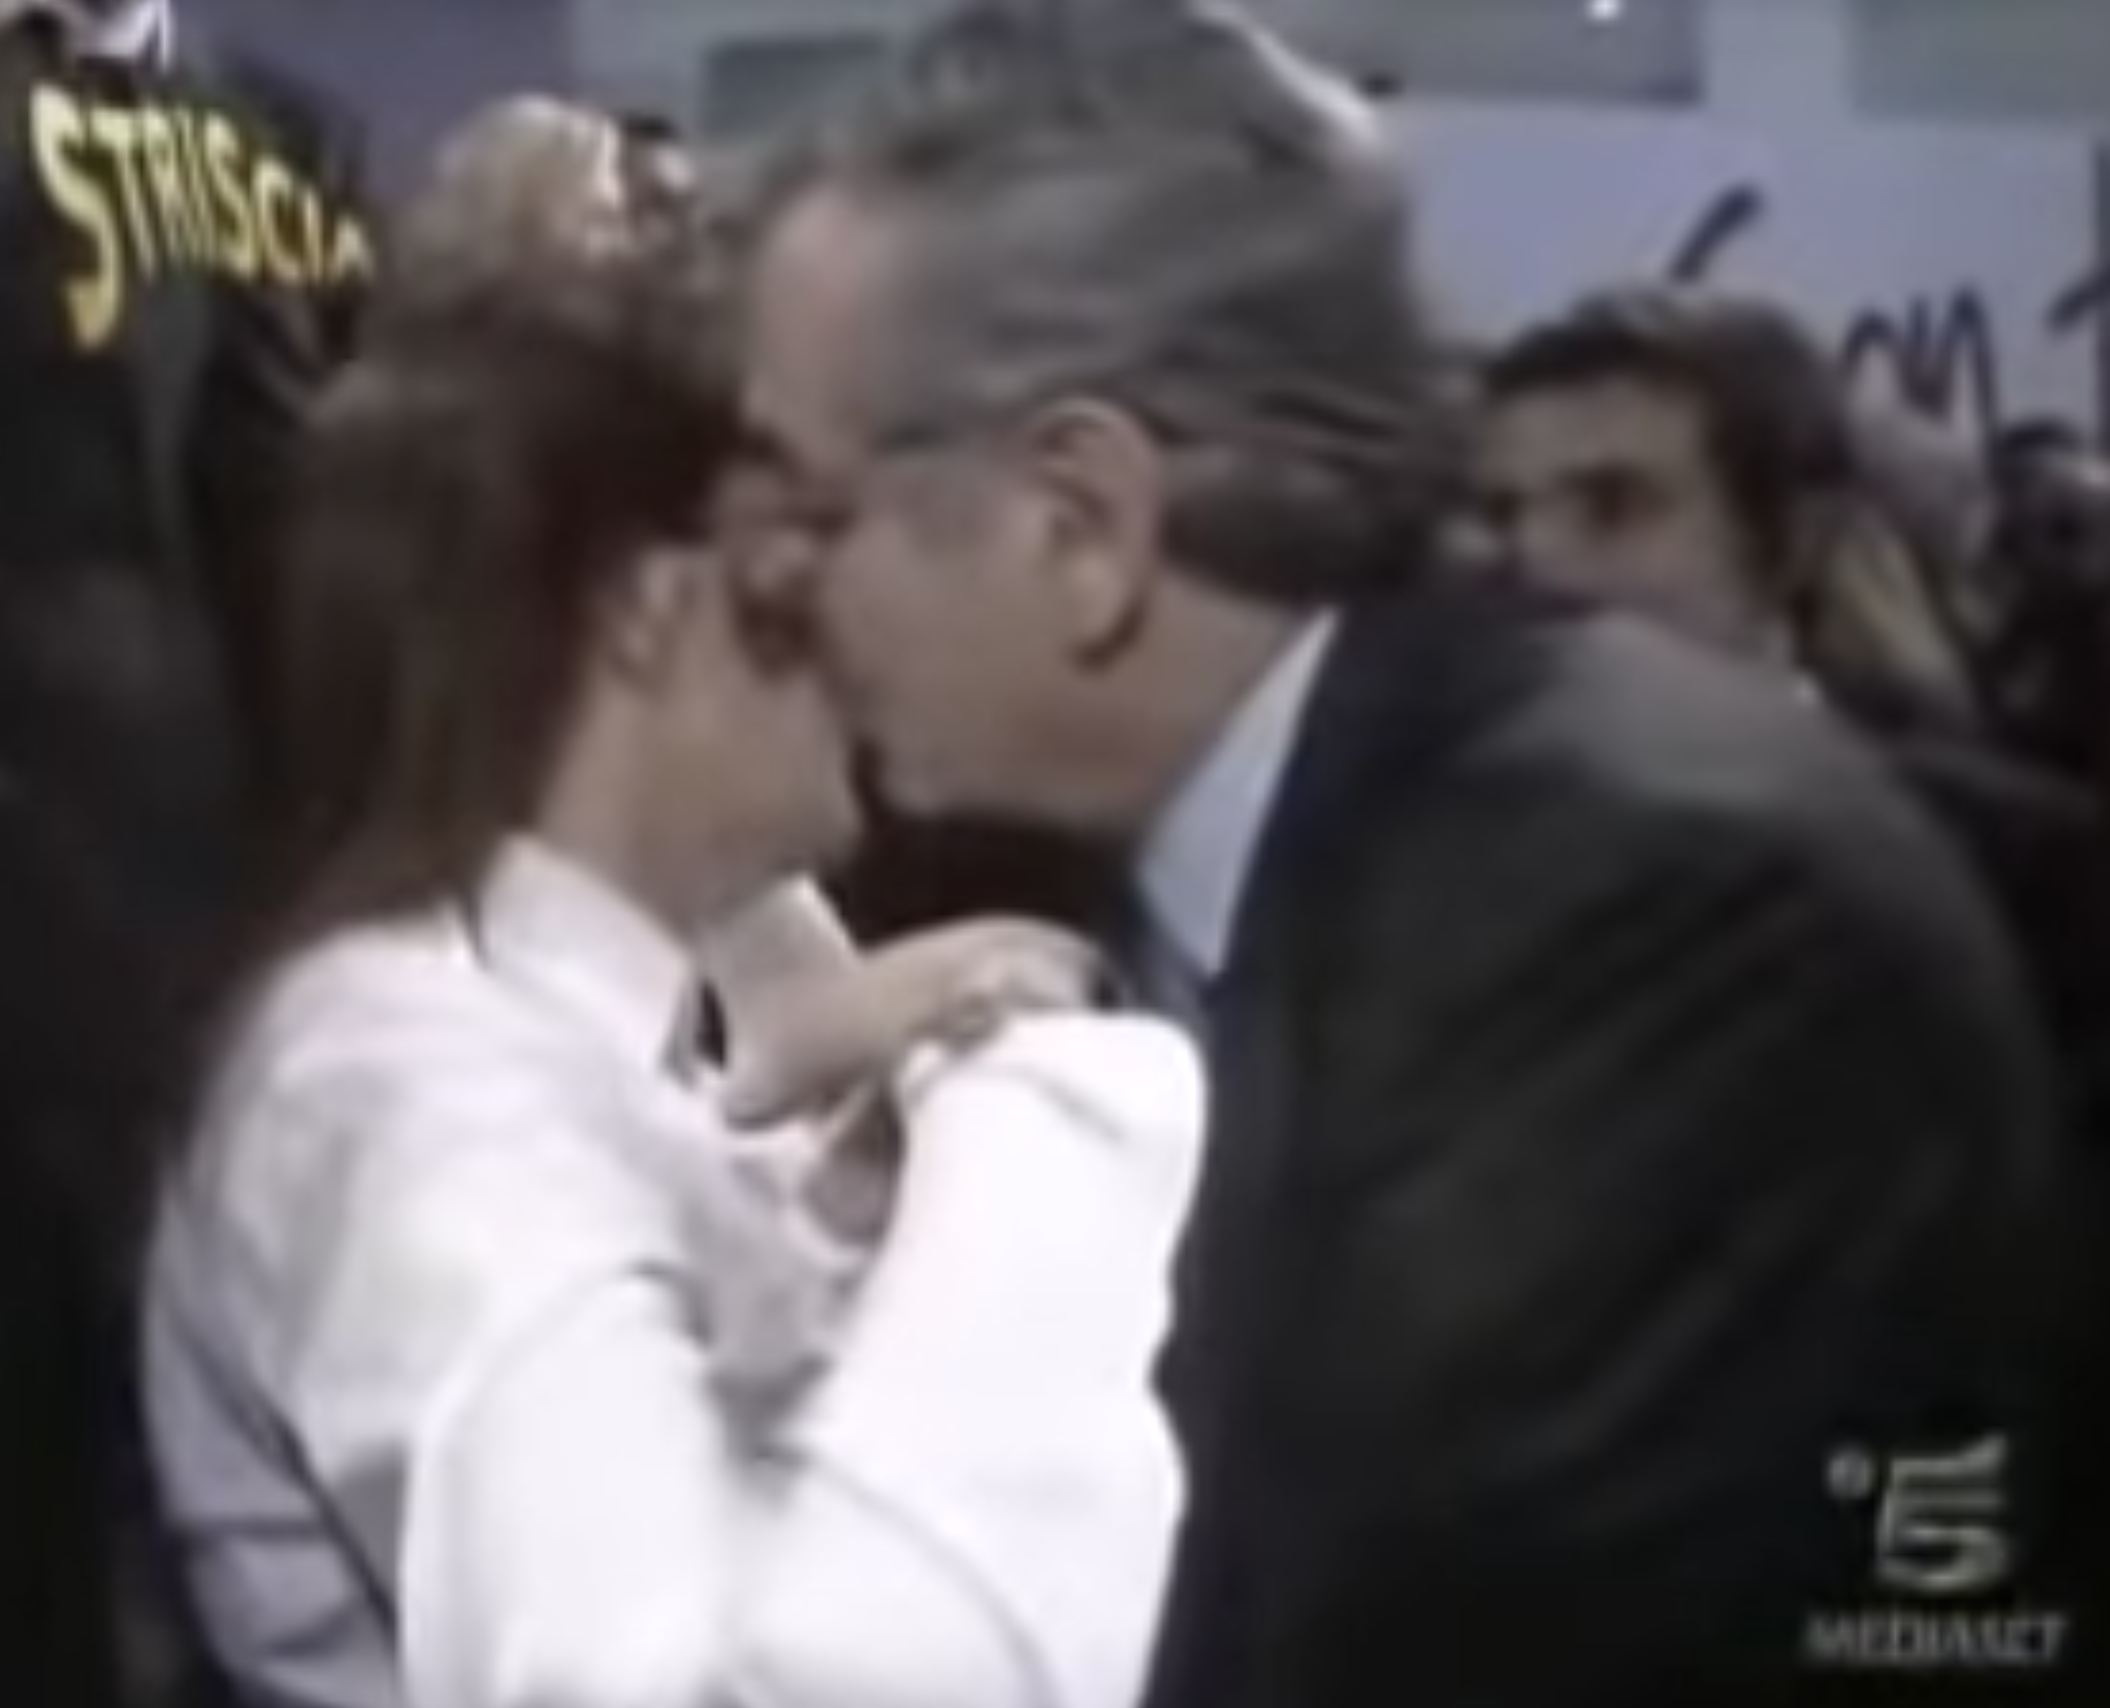 Renata Polverini e Vincenzo Zacchero in un frame del video per cui RTI dovrà risarcire l'ex sindaco per 50mila euro